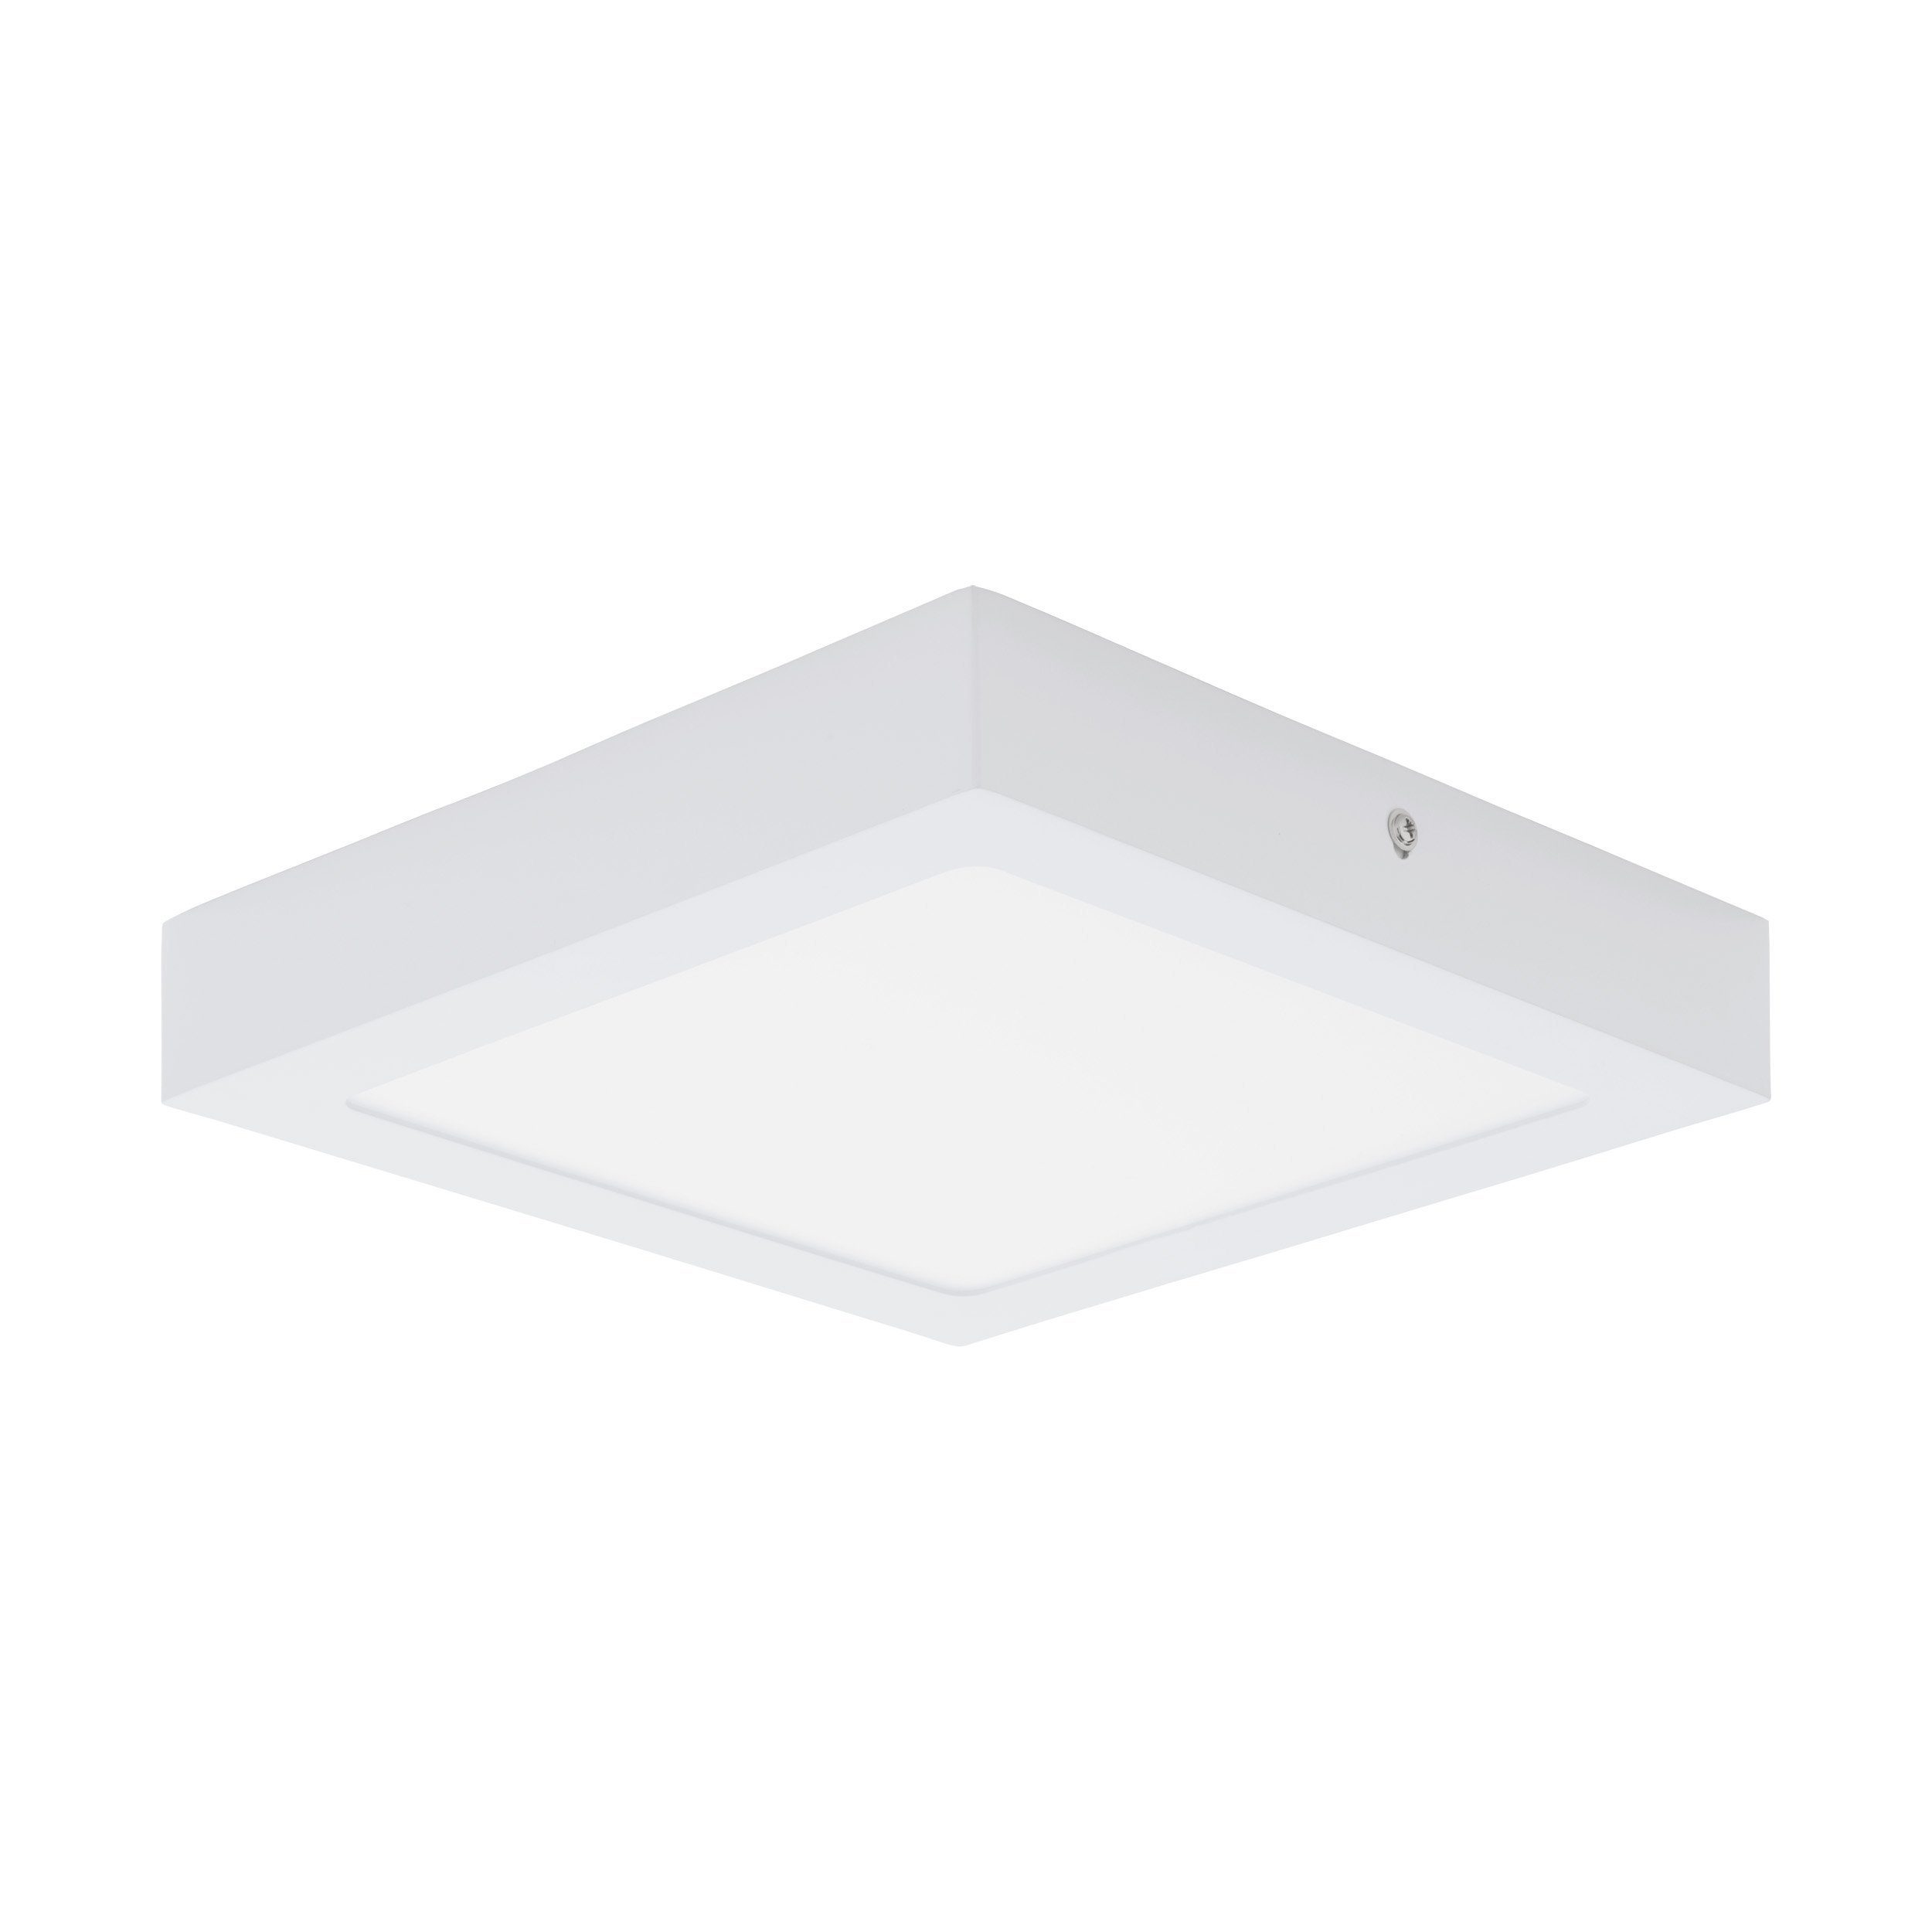 EGLO Aufbauleuchte Fueva 1, Leuchtmittel inklusive, Deckenlampe weiß, 22.5 cm, warmweiß, Deckenleuchte, Lampe